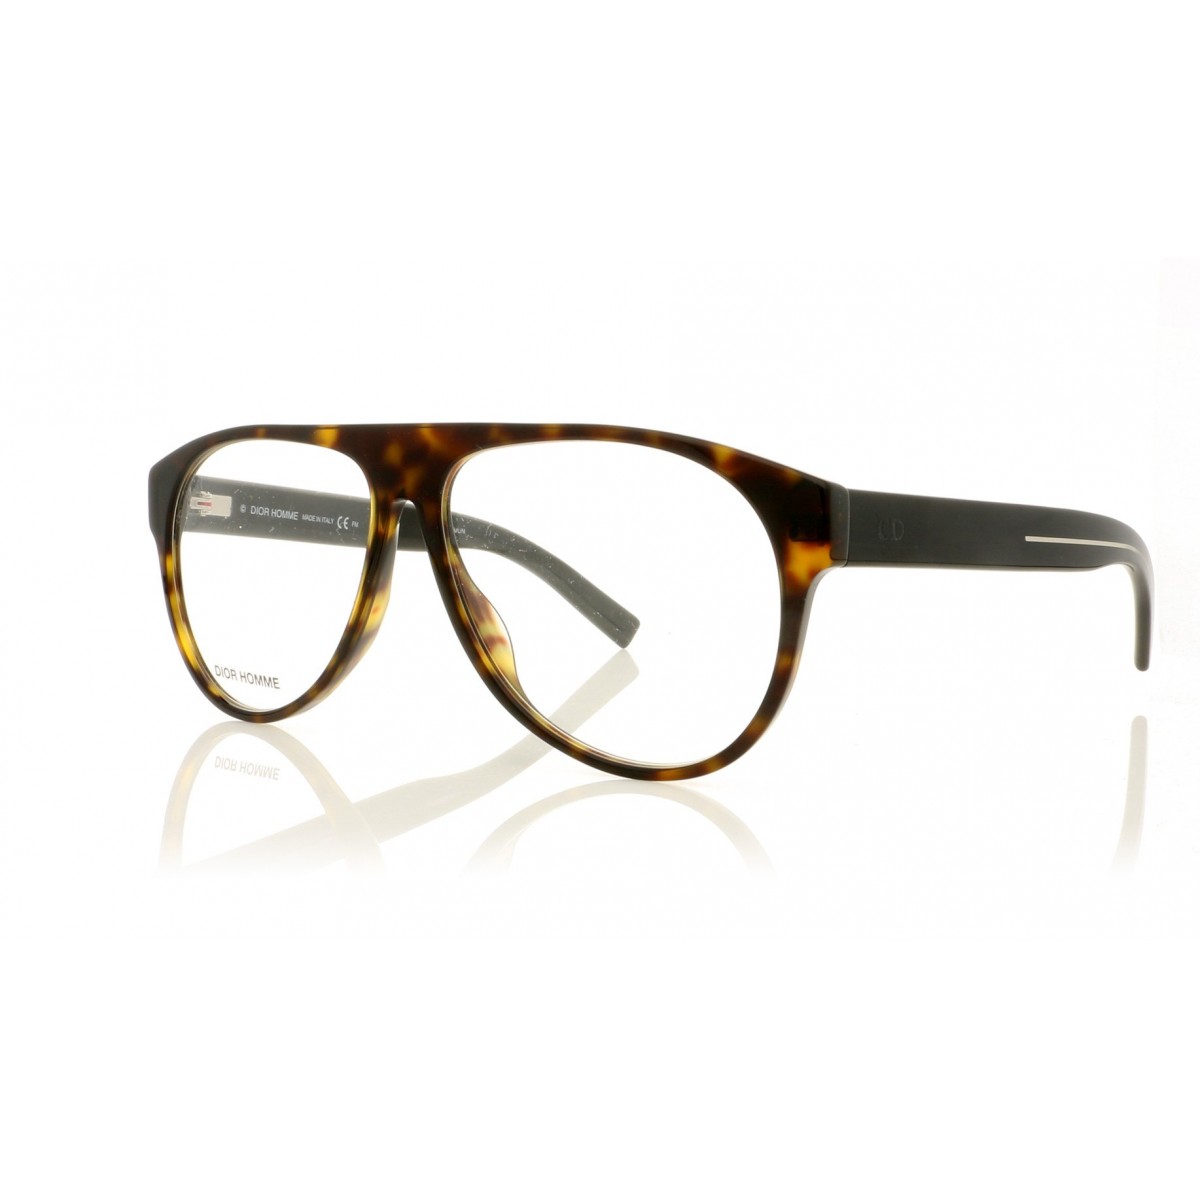 Dior Blacktie 256 | Men's eyeglasses